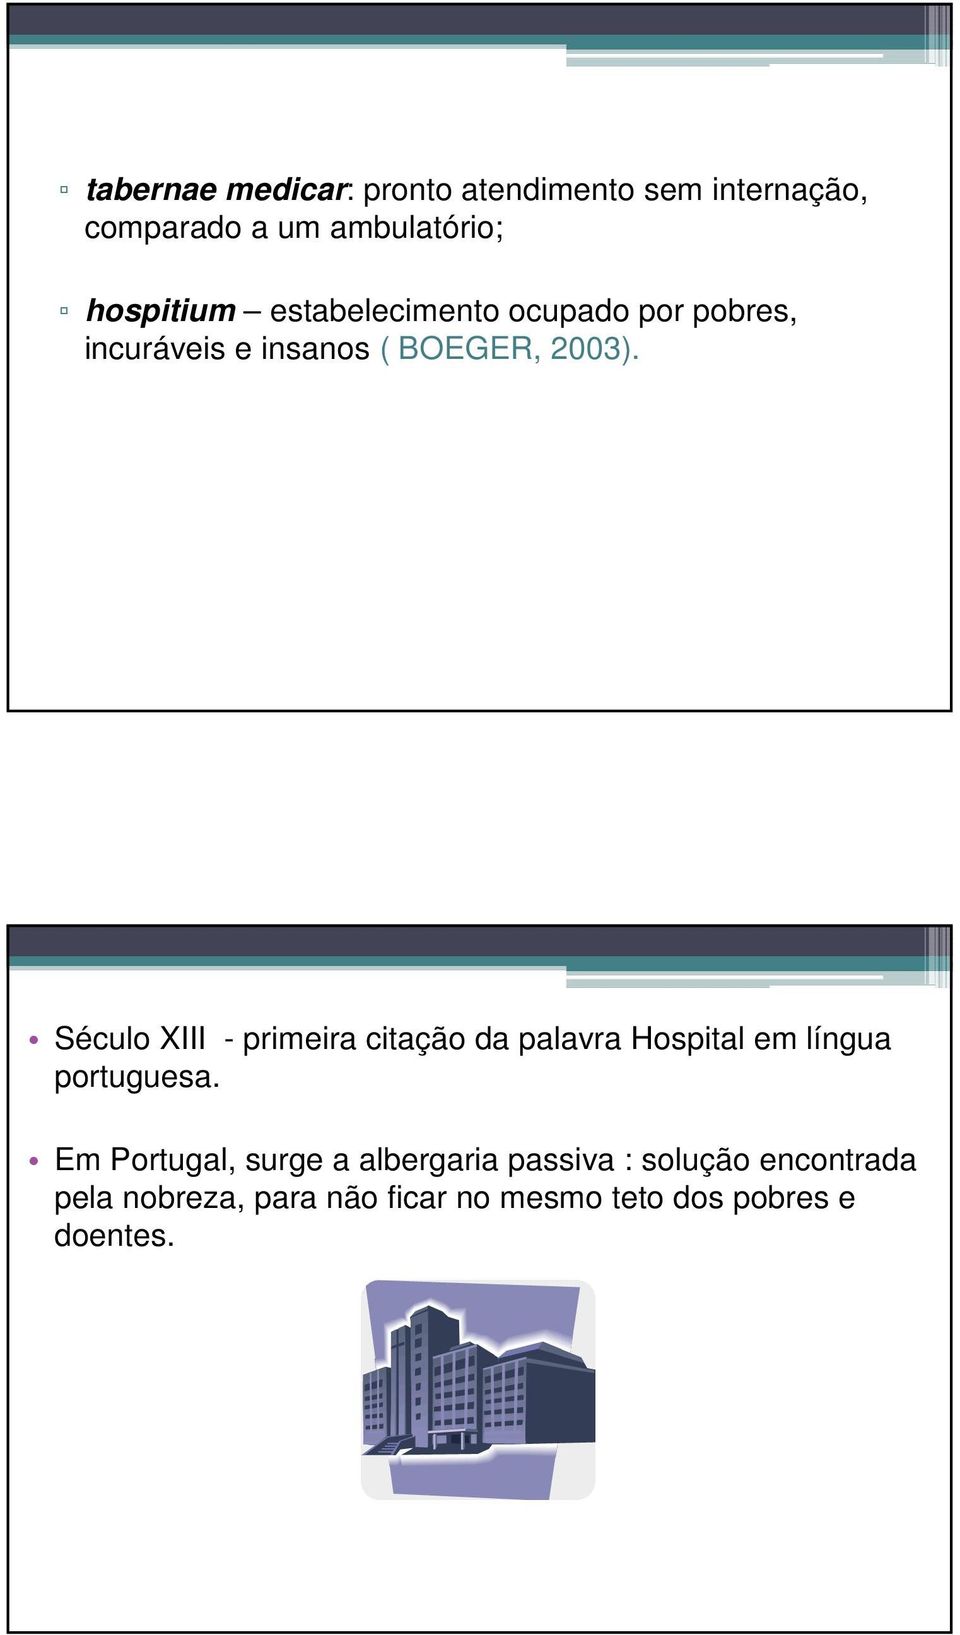 Século XIII - primeira citação da palavra Hospital em língua portuguesa.